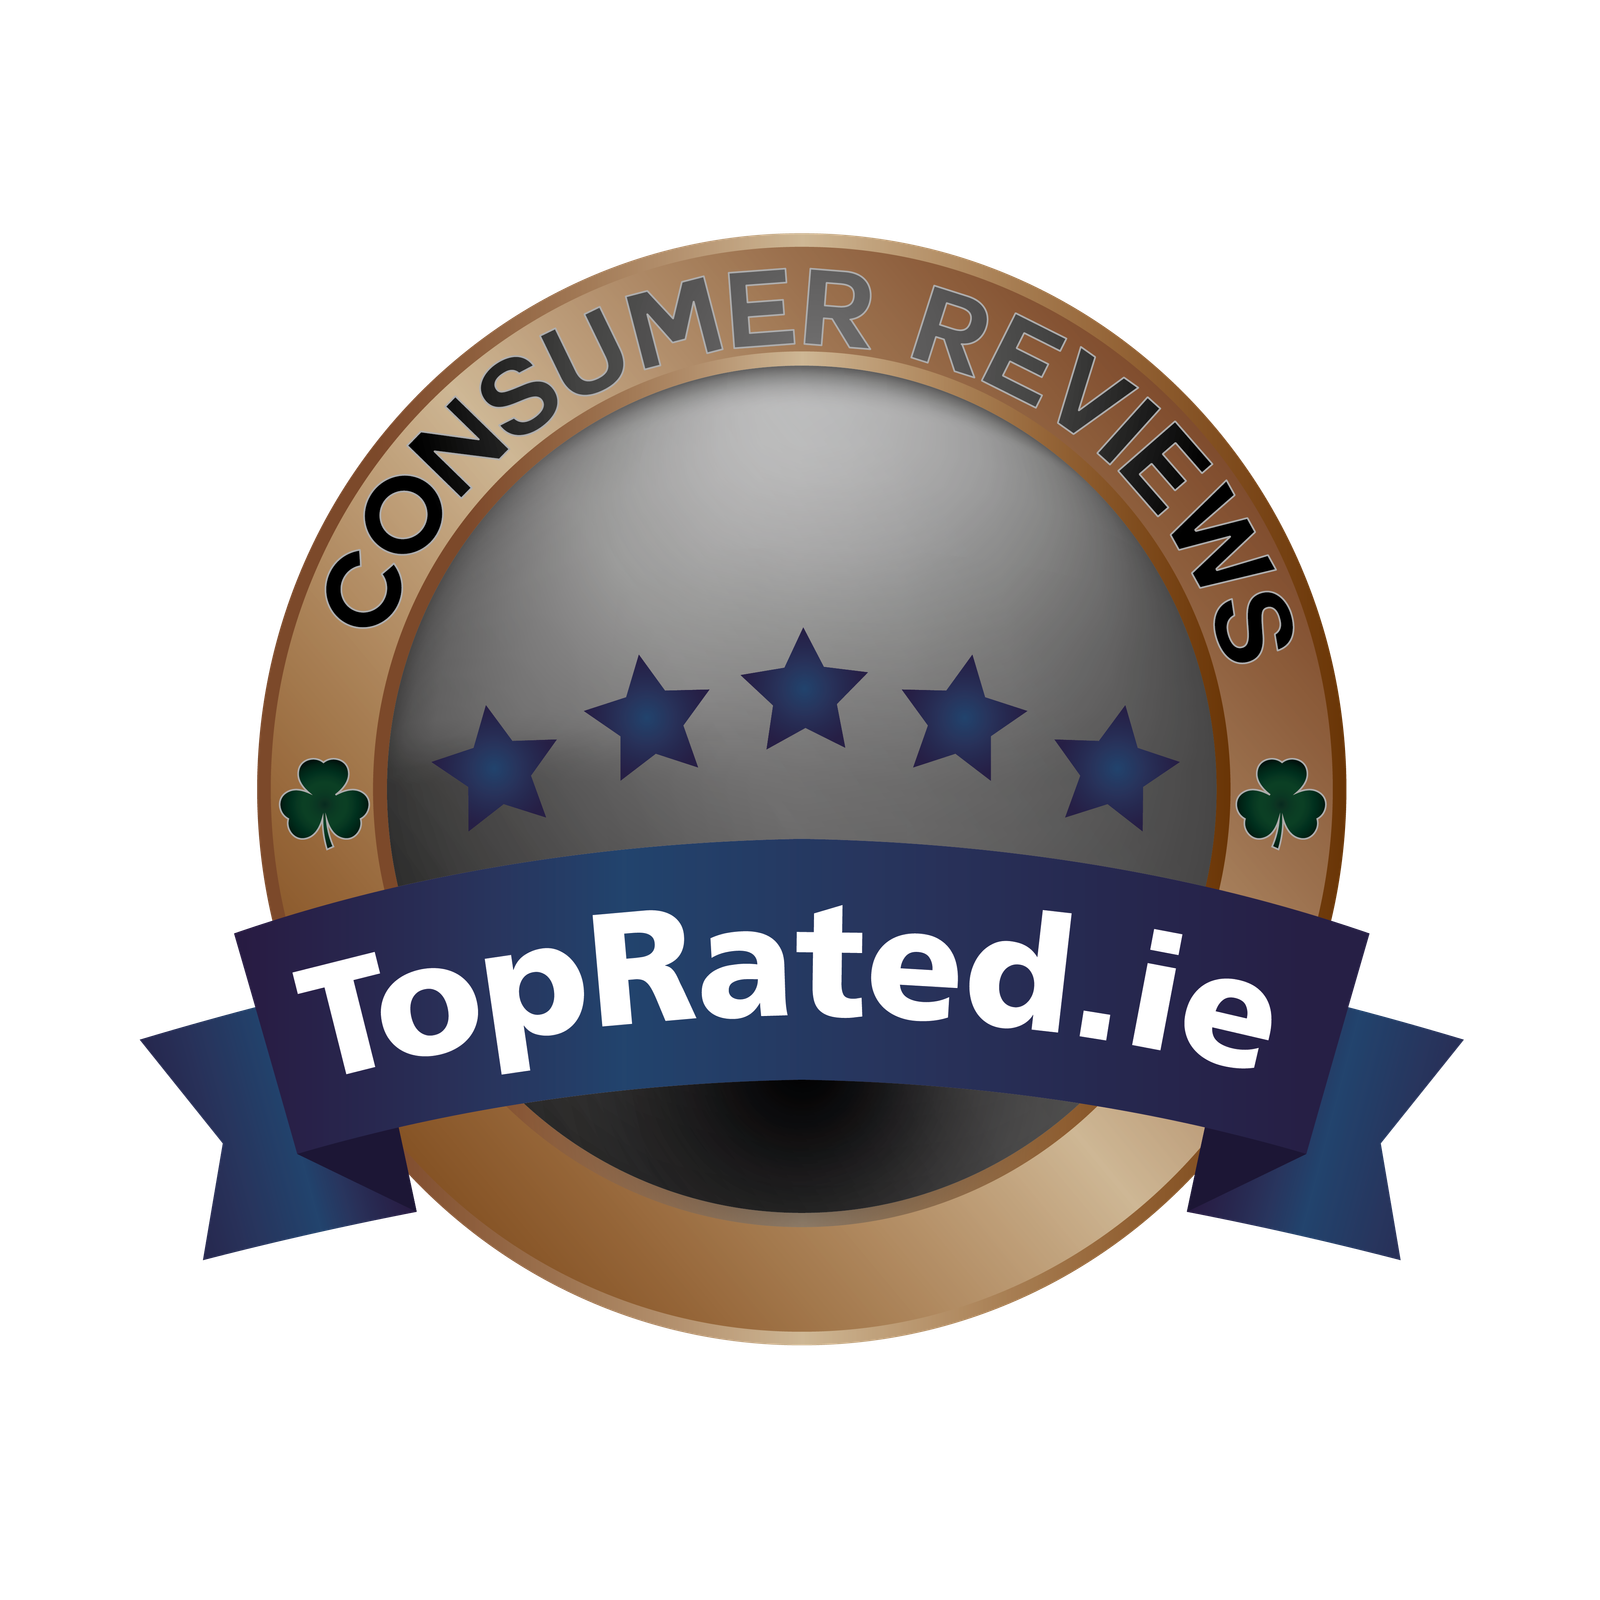 Toprated.ie - Best In Ireland